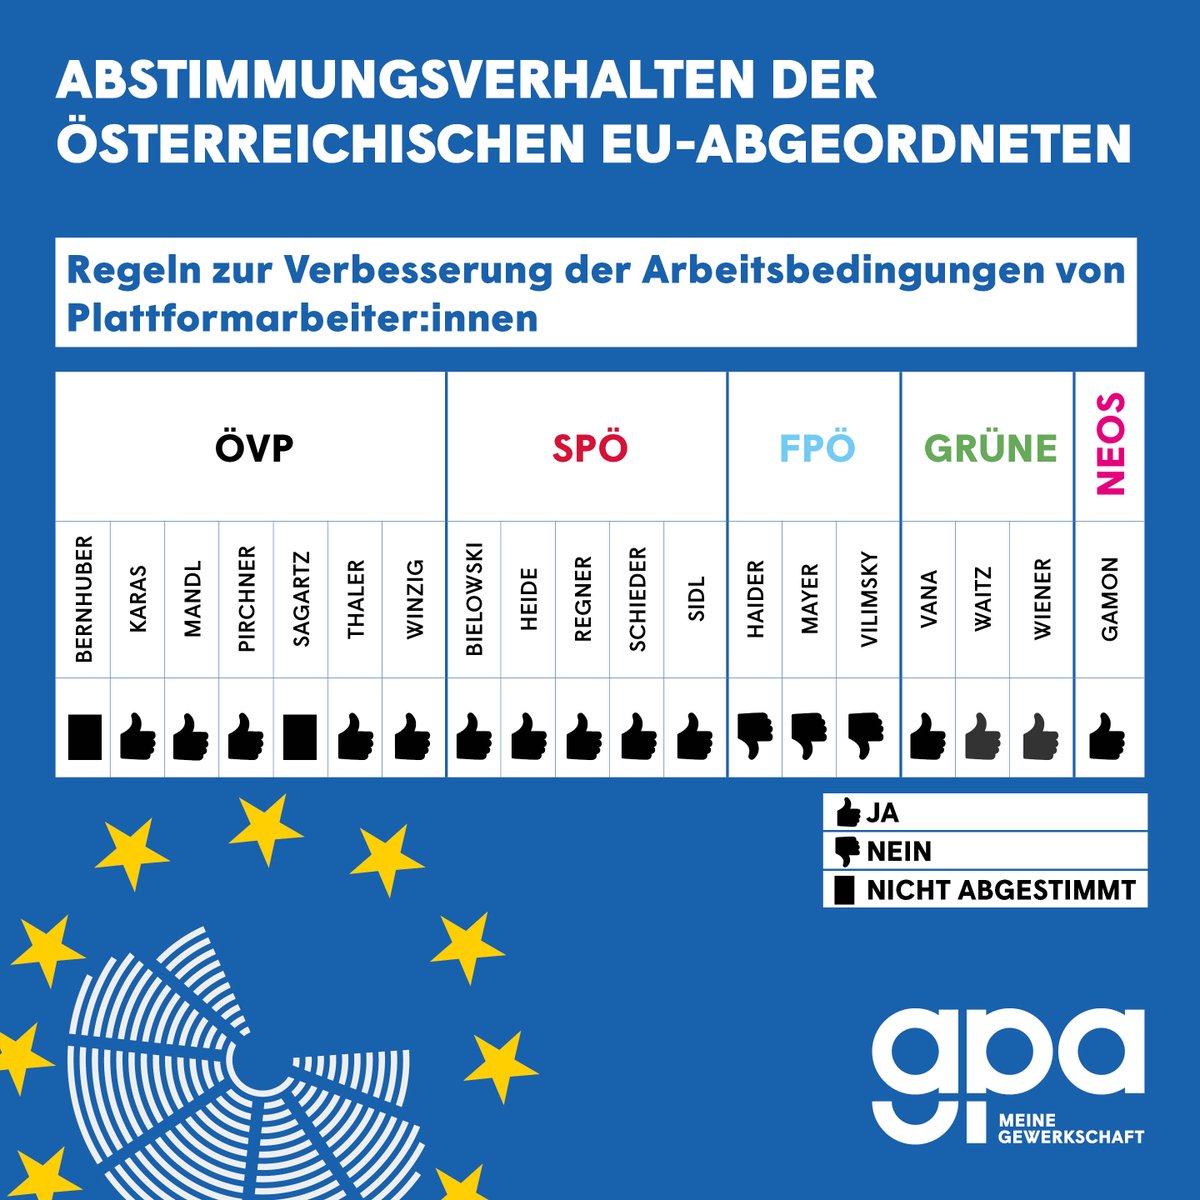 Am 24. April wurden im #EUParlament Regeln beschlossen, die die Arbeitsbedingungen von Plattformarbeiter:innen verbessern. Hier siehst du, wie die österreichischen Abgeordneten abgestimmt haben. Mehr zu unseren Forderungen auf #EU-Ebene ➡️ gpa.at/eu-wahl